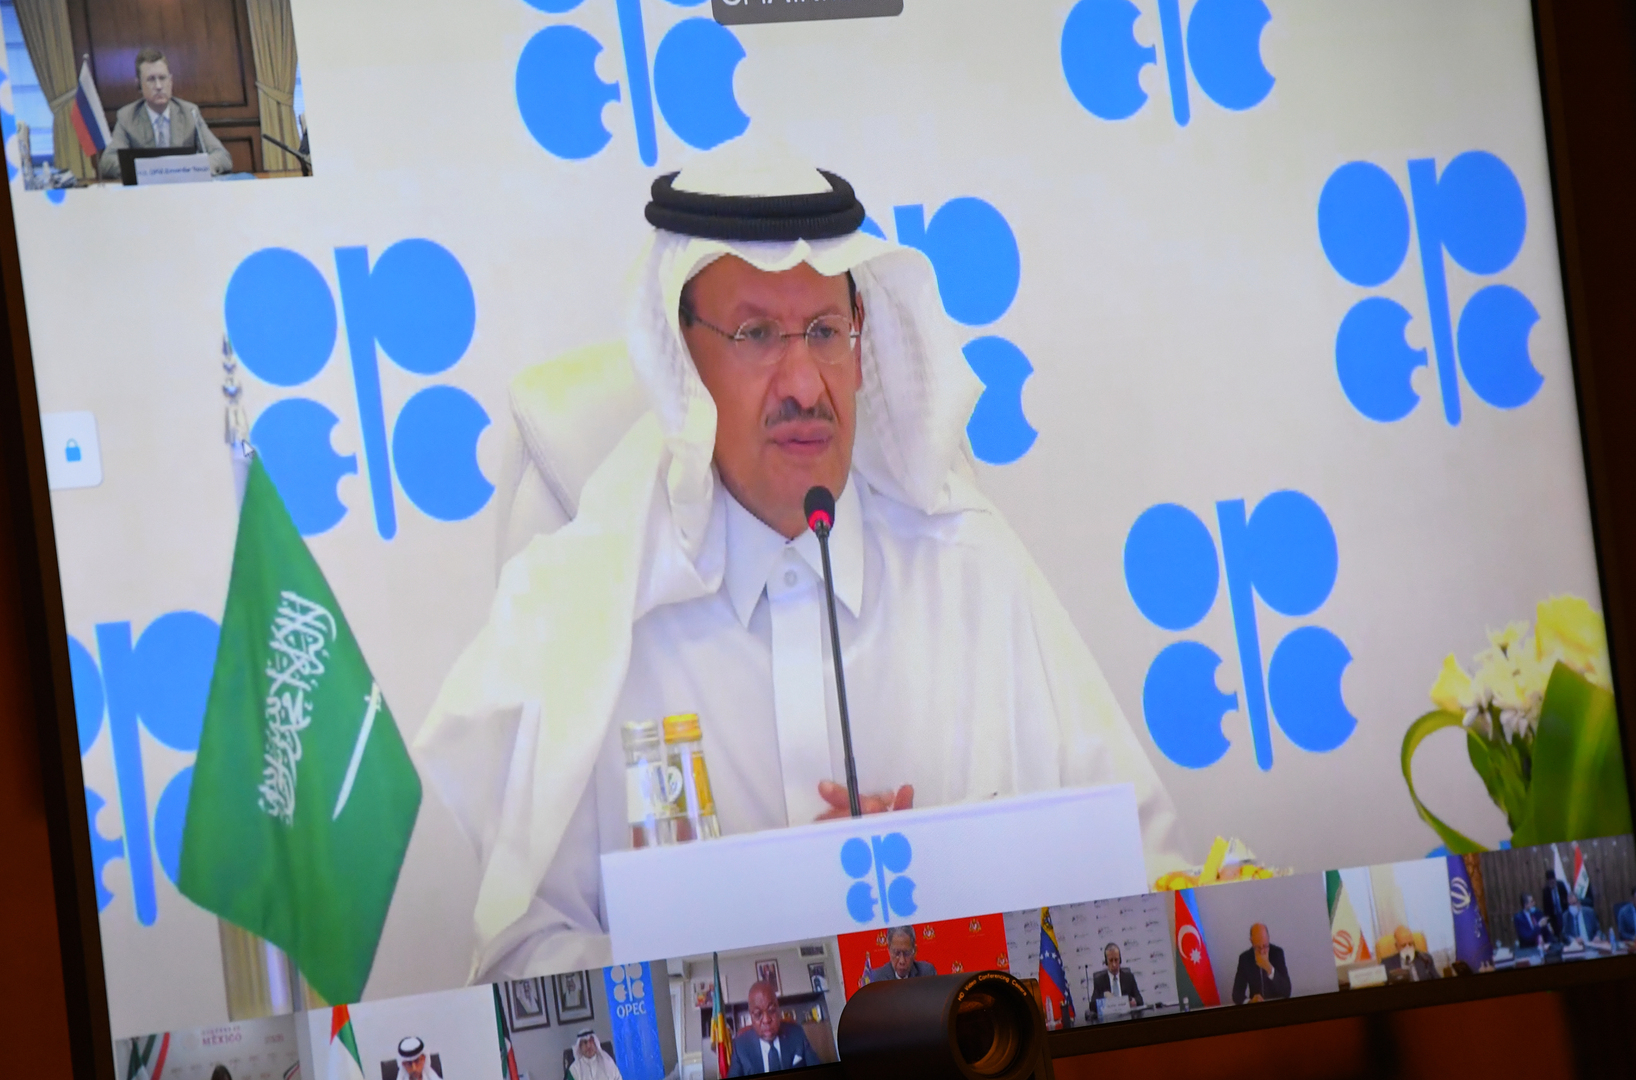 بعد جلسة متقلبة.. النفط يصعد عقب تصريحات الأمير عبد العزيز بن سلمان